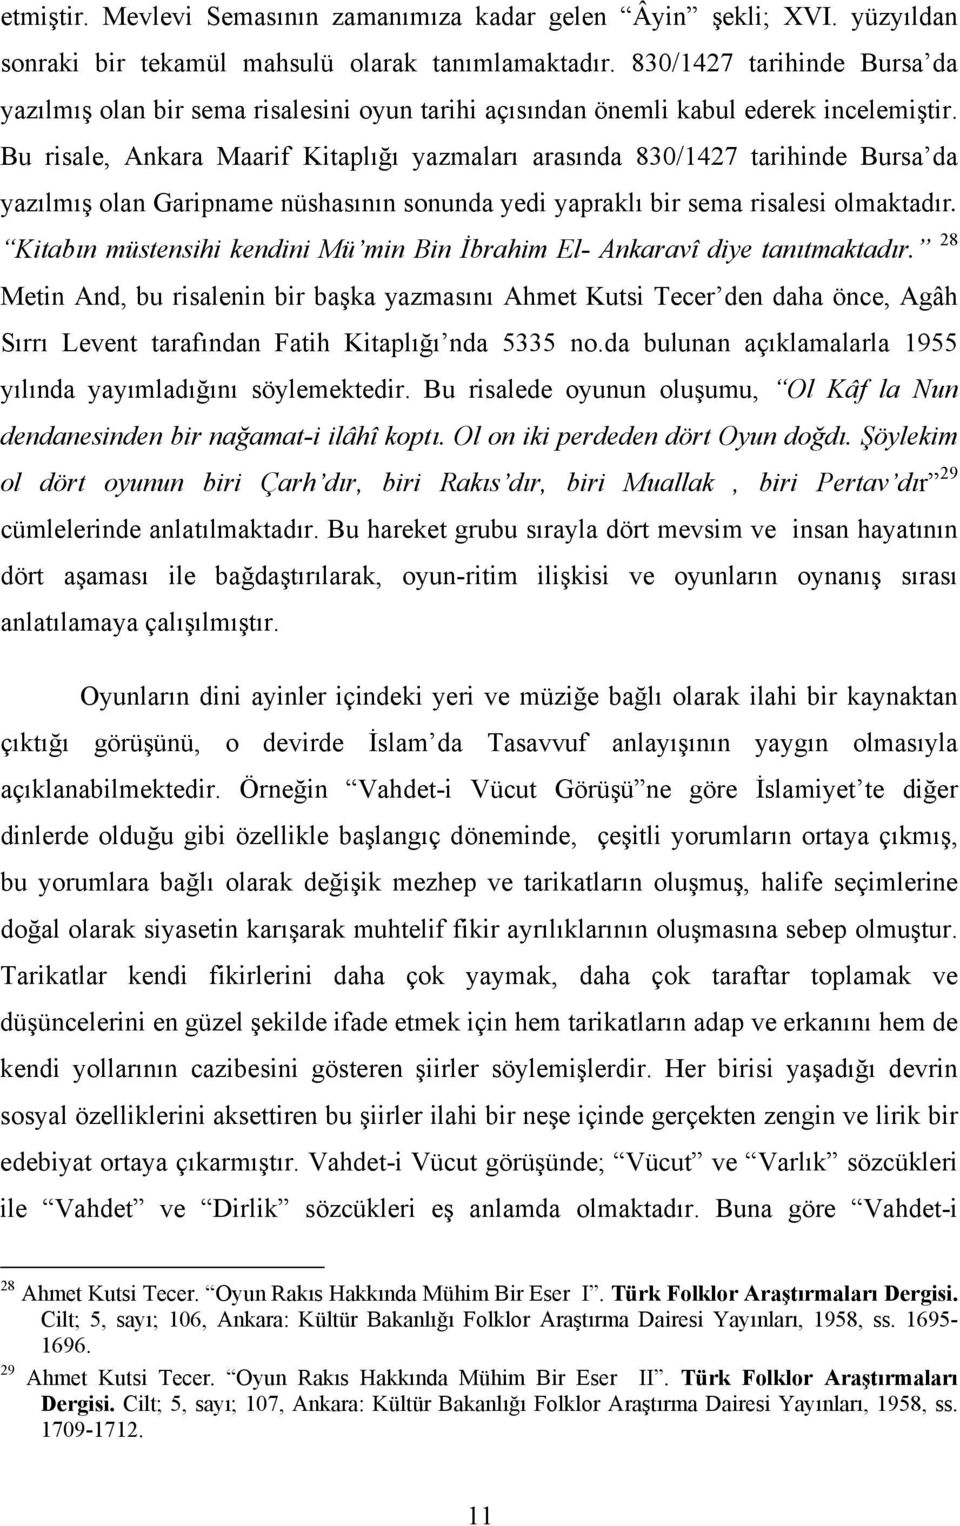 Bu risale, Ankara Maarif Kitaplığı yazmaları arasında 830/1427 tarihinde Bursa da yazılmış olan Garipname nüshasının sonunda yedi yapraklı bir sema risalesi olmaktadır.